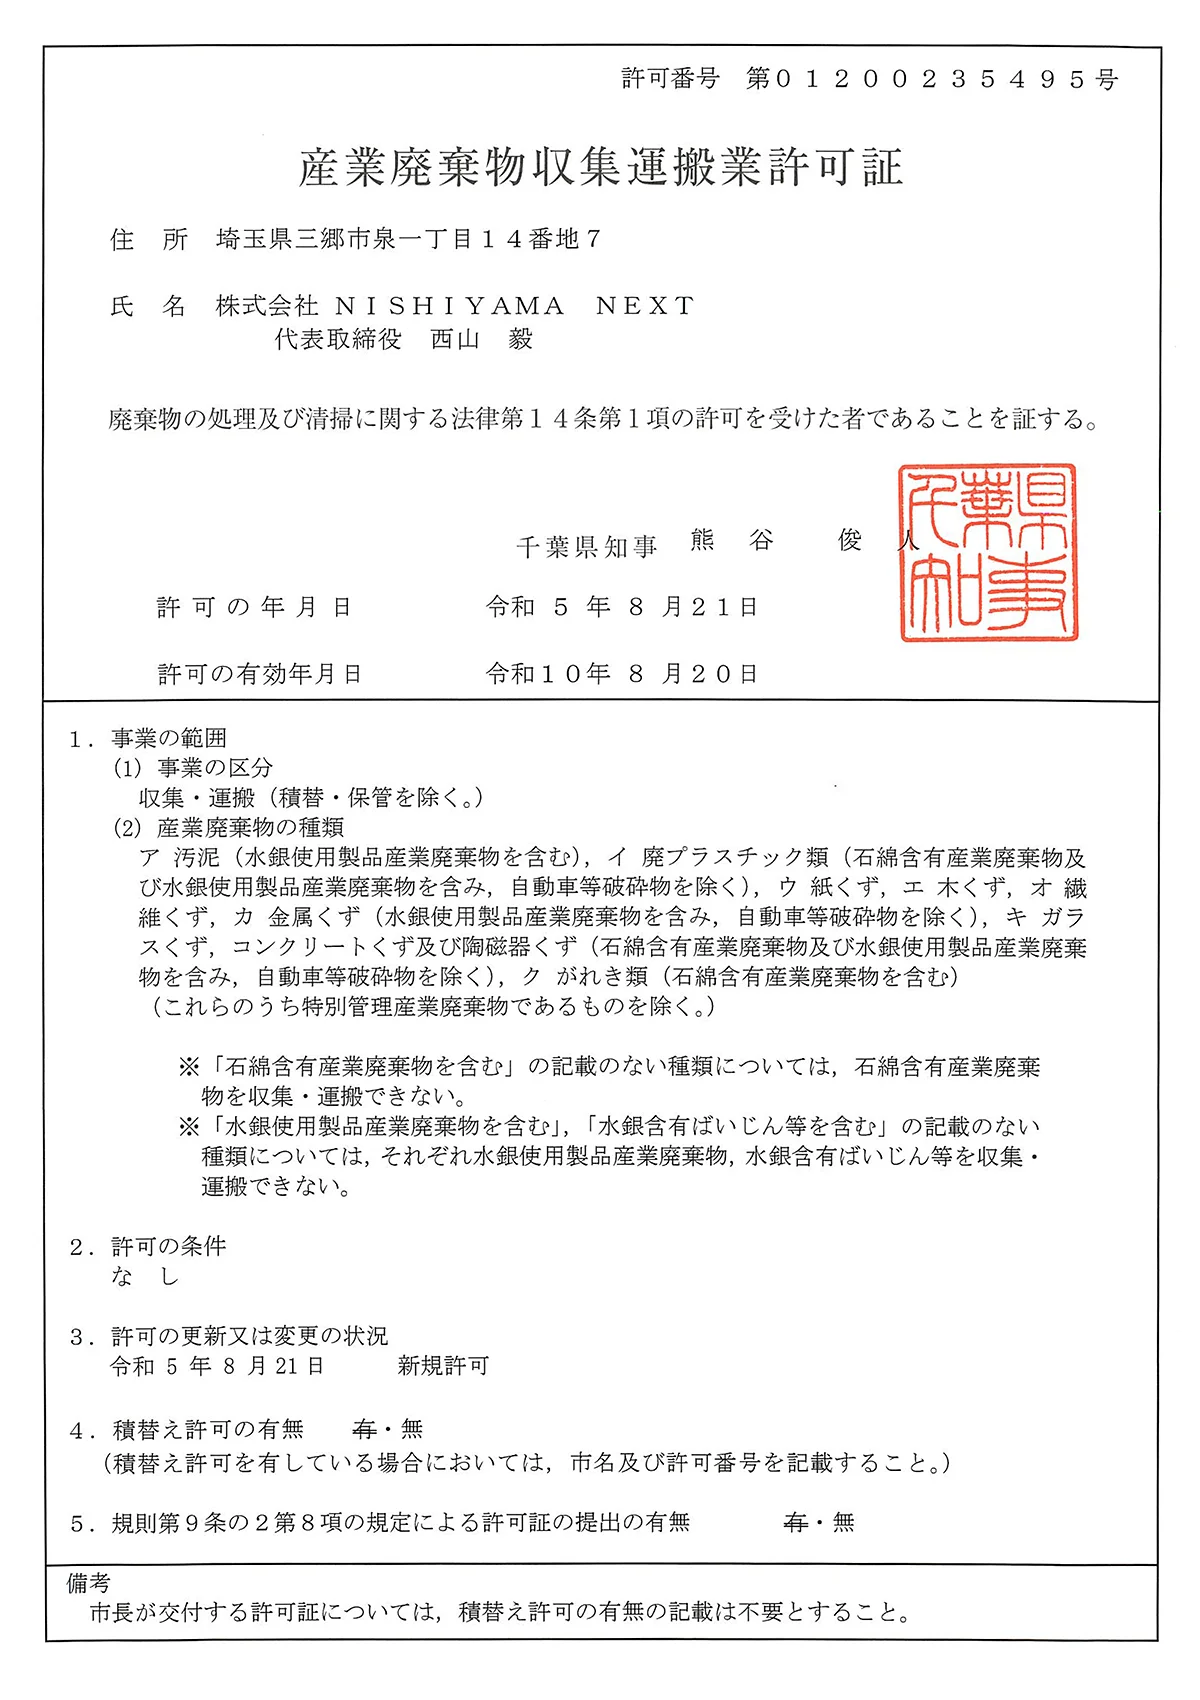 千葉県 - 産業廃棄物収集運搬許可証